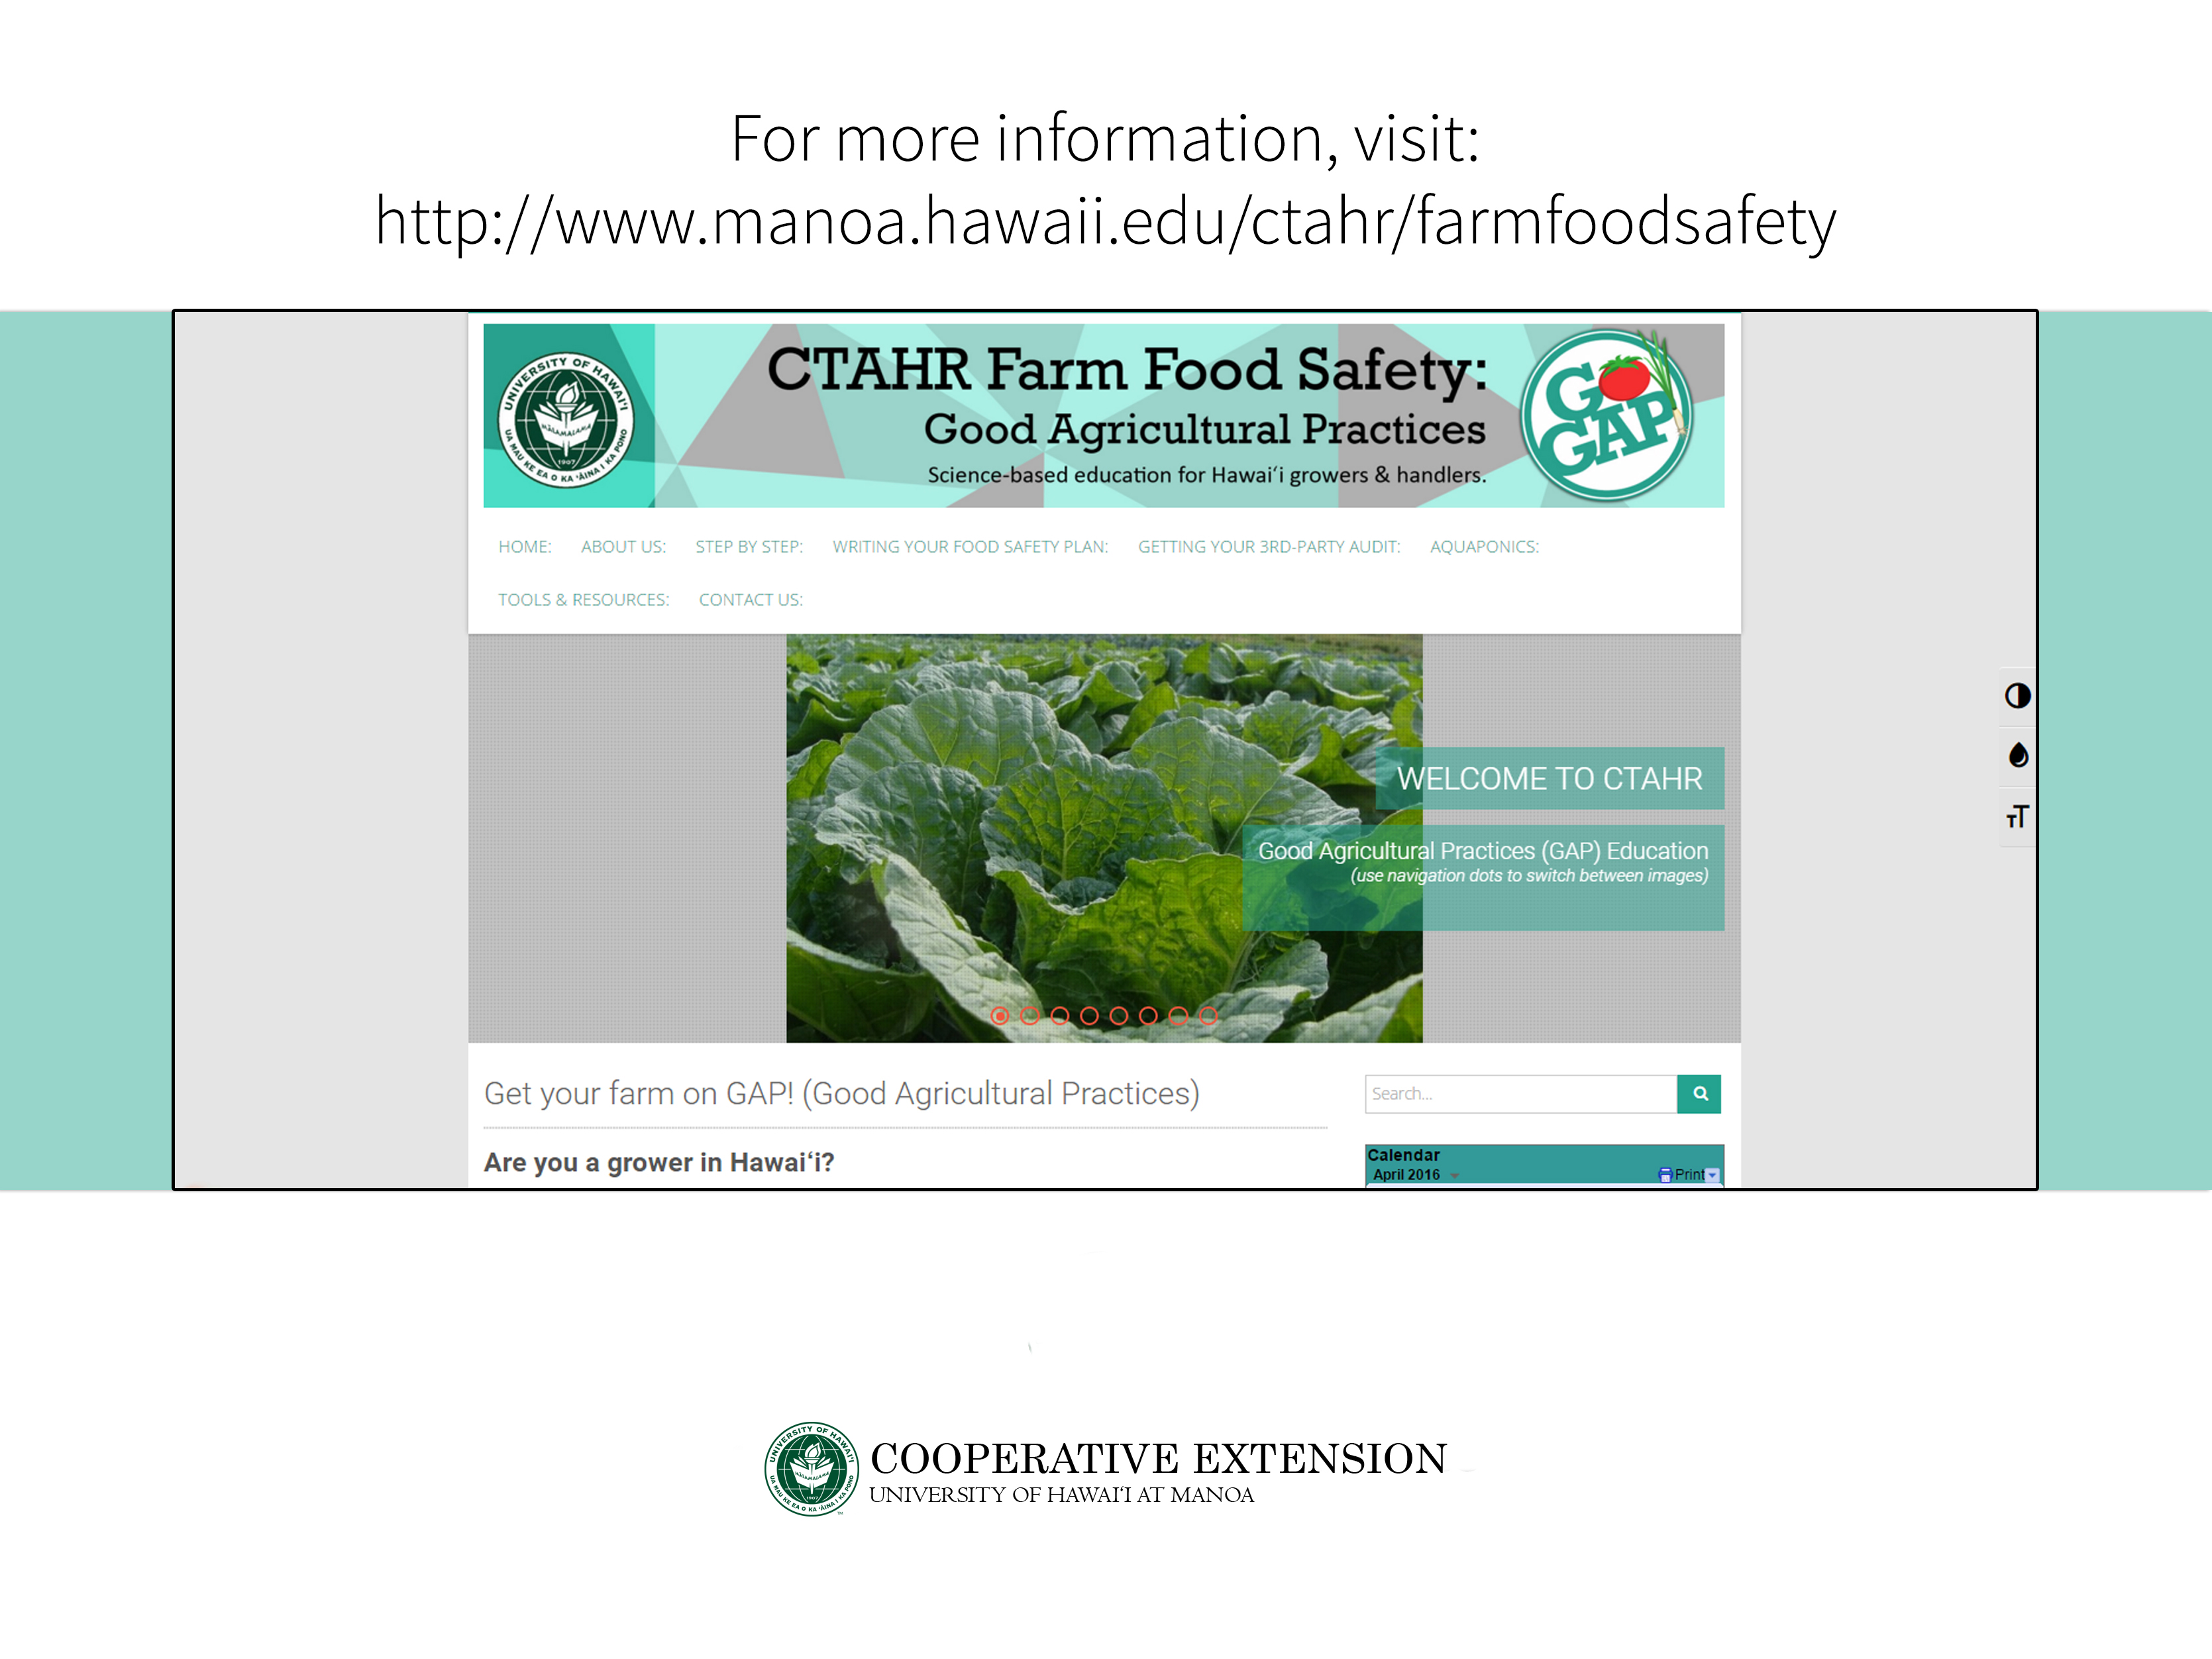 CTAHR Farm Food Safety Website